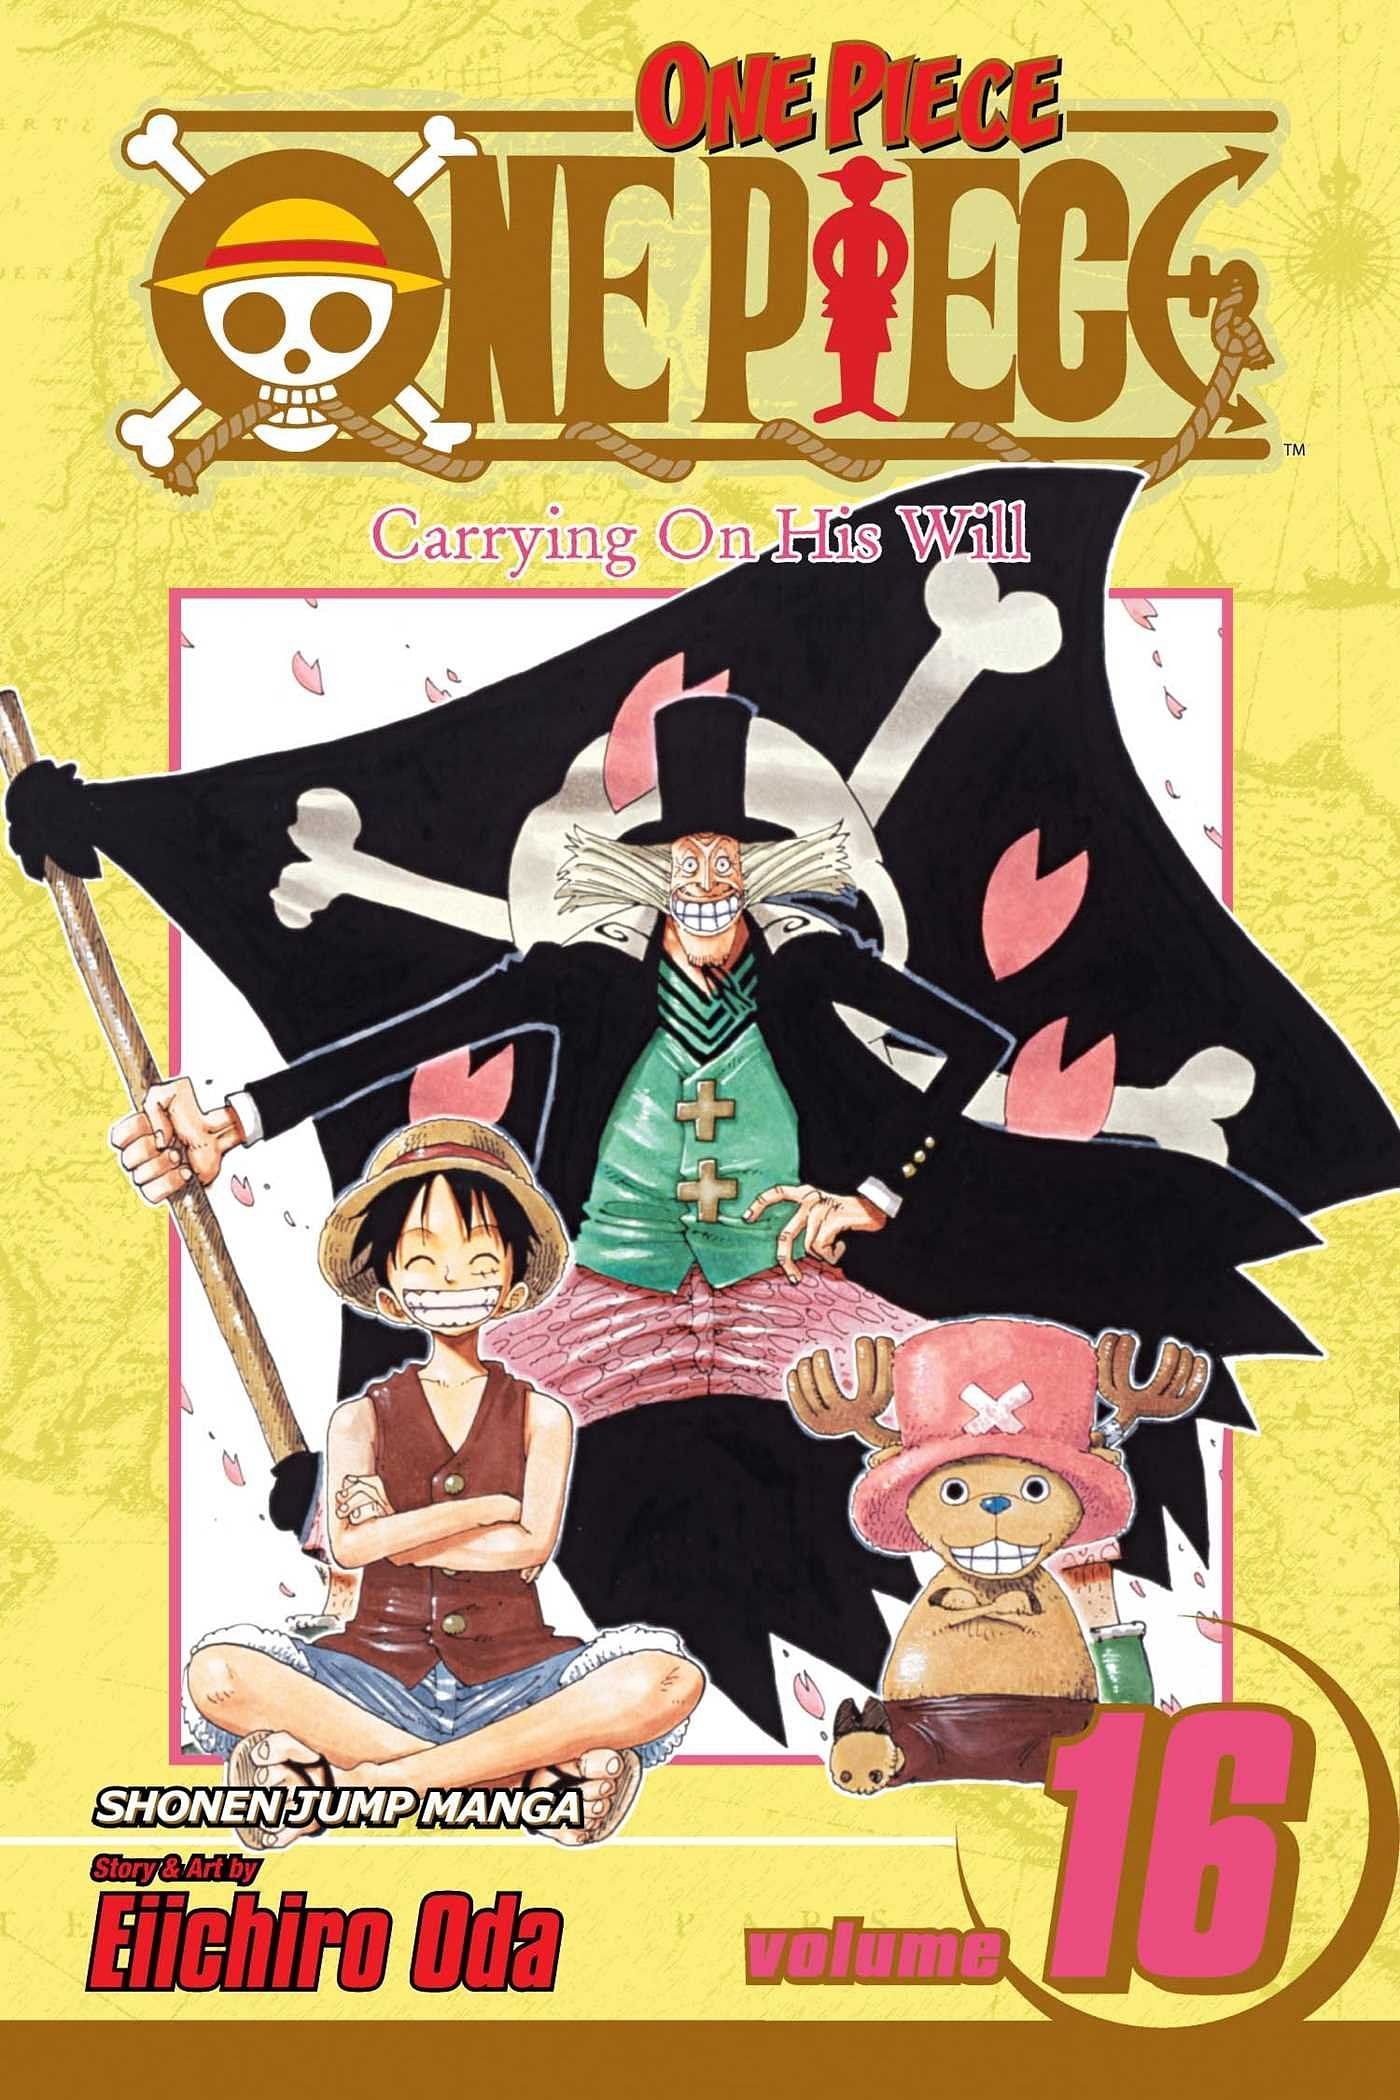 The cover art for One Piece Volume 16 (Image via Shueisha)